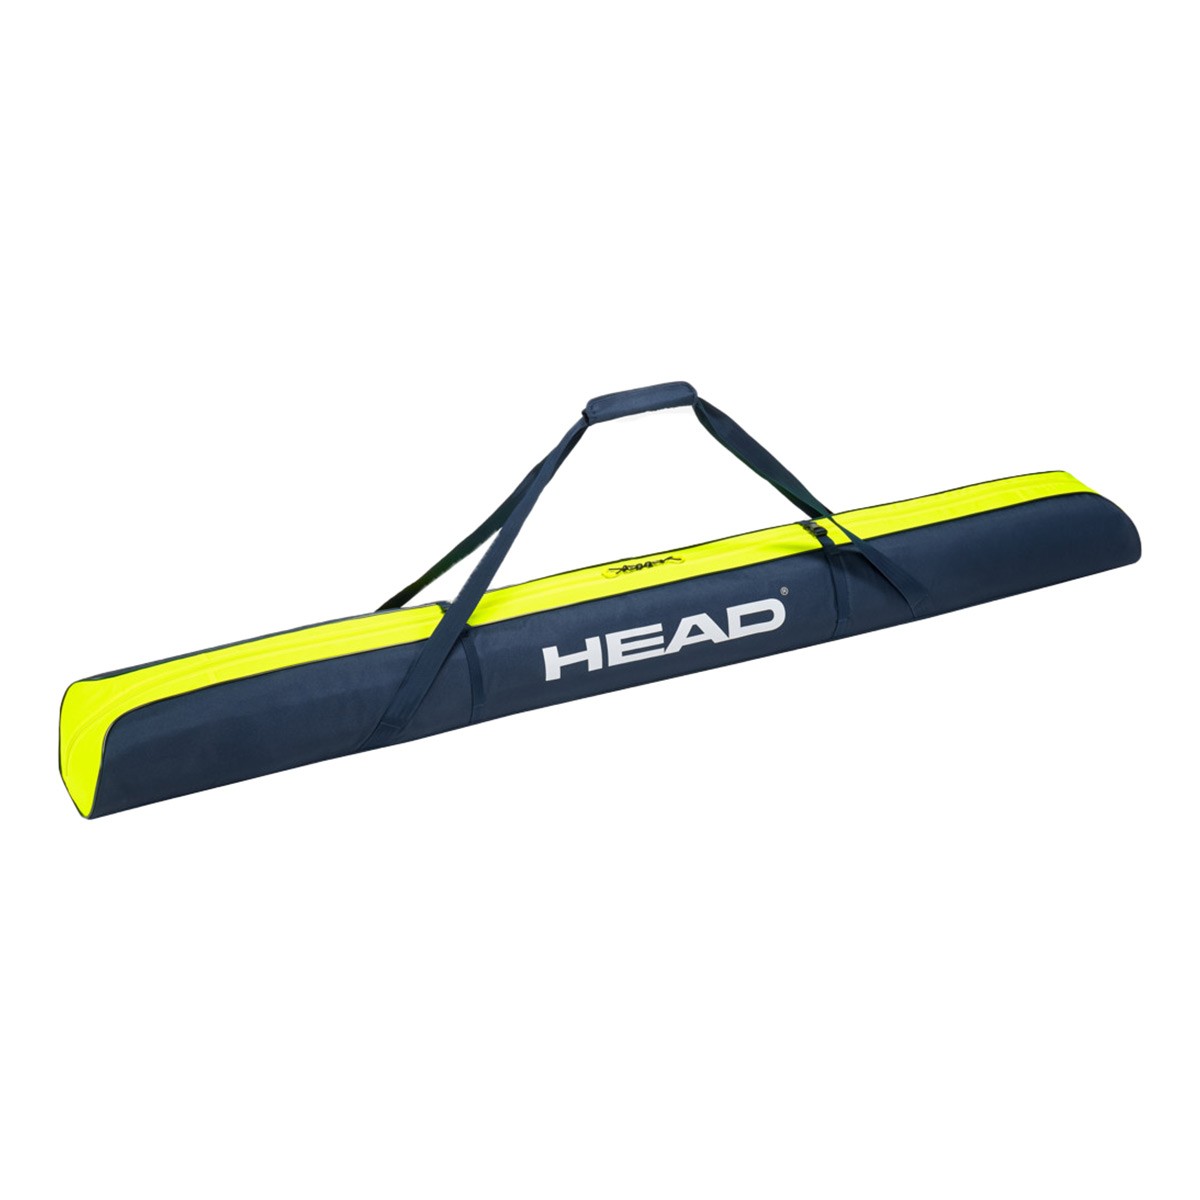  Sacca Porta sci Head Single Ski Bag 195 (Colore: nero giallo, Taglia: 195) 